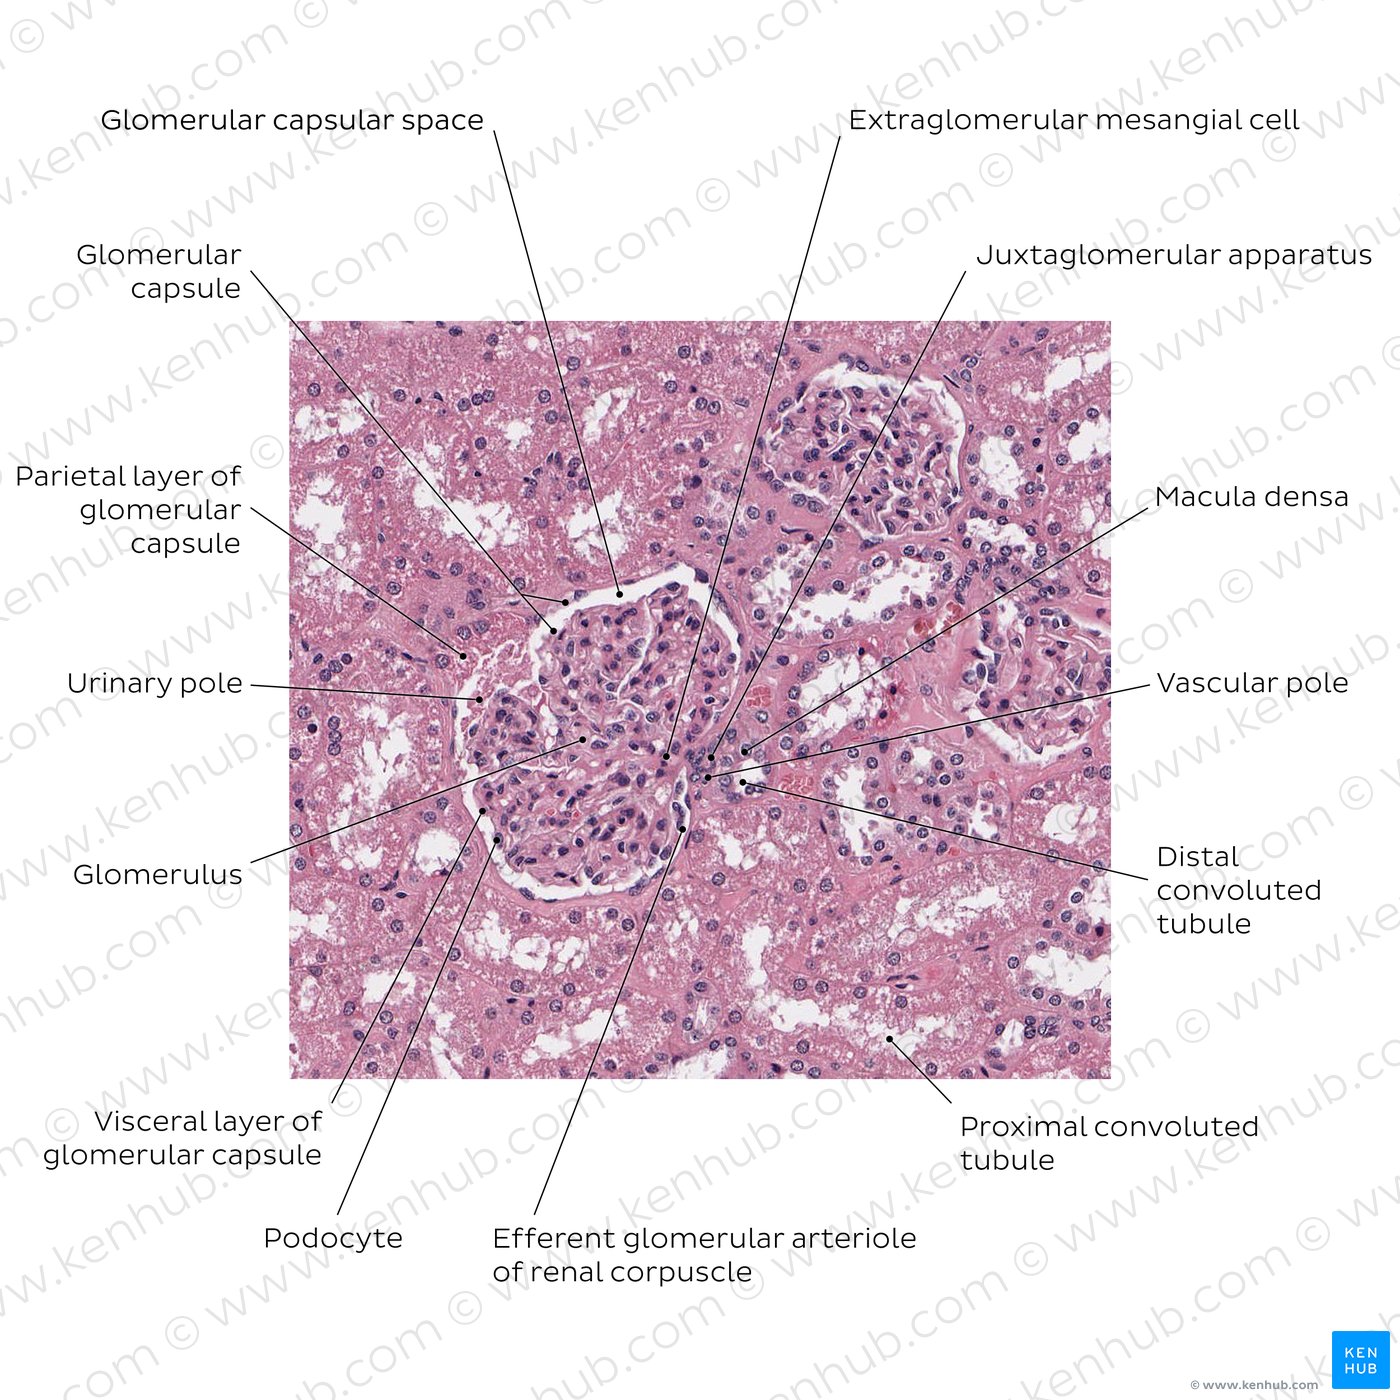 Kidney (renal corpuscle)